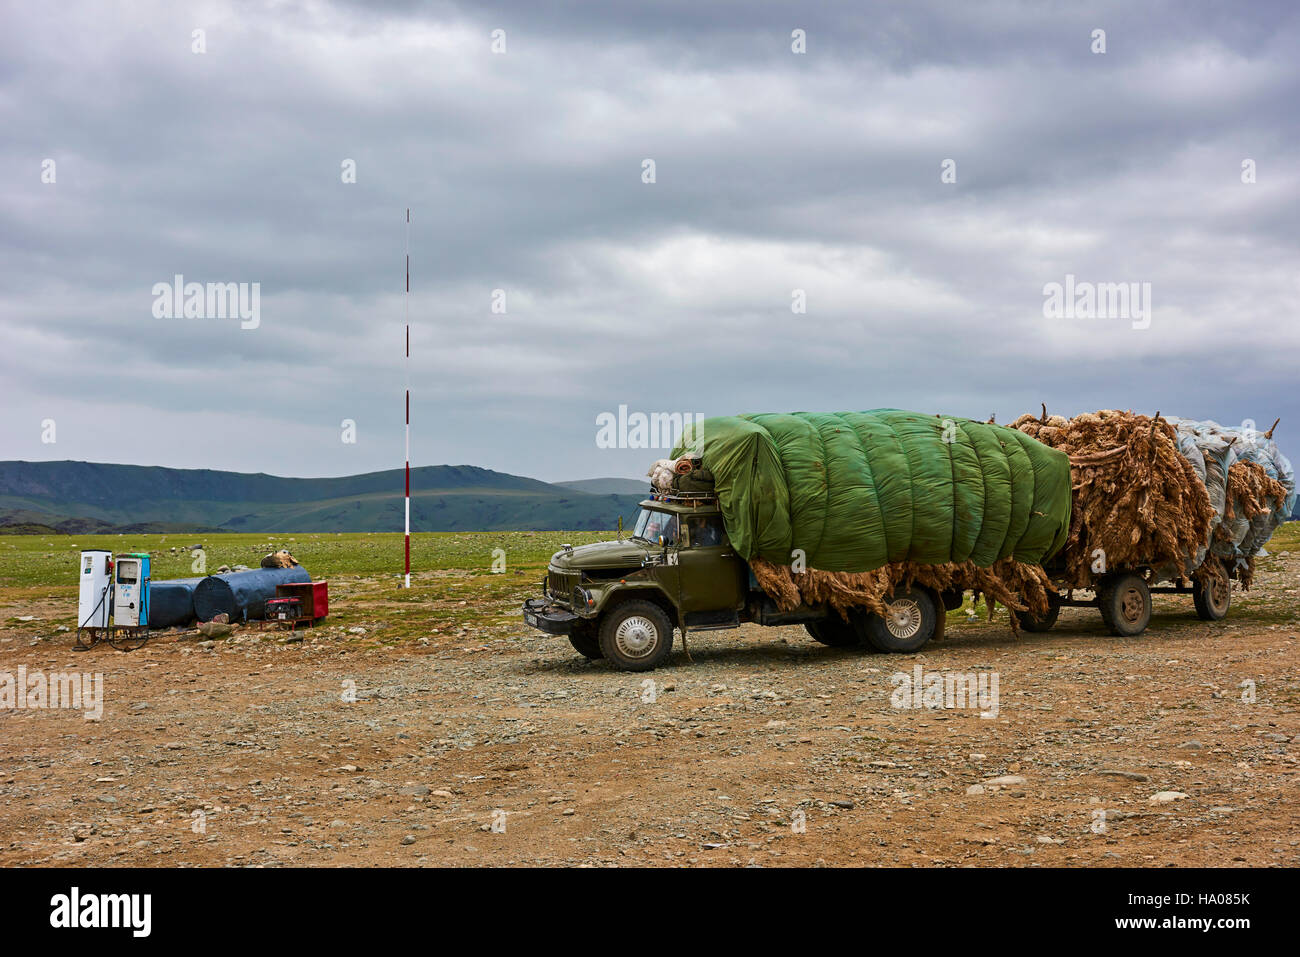 Mongolia, Bayan-Ulgii provincia, Mongolia occidentale, un carrello appesantito con la lana a pompe di benzina Foto Stock